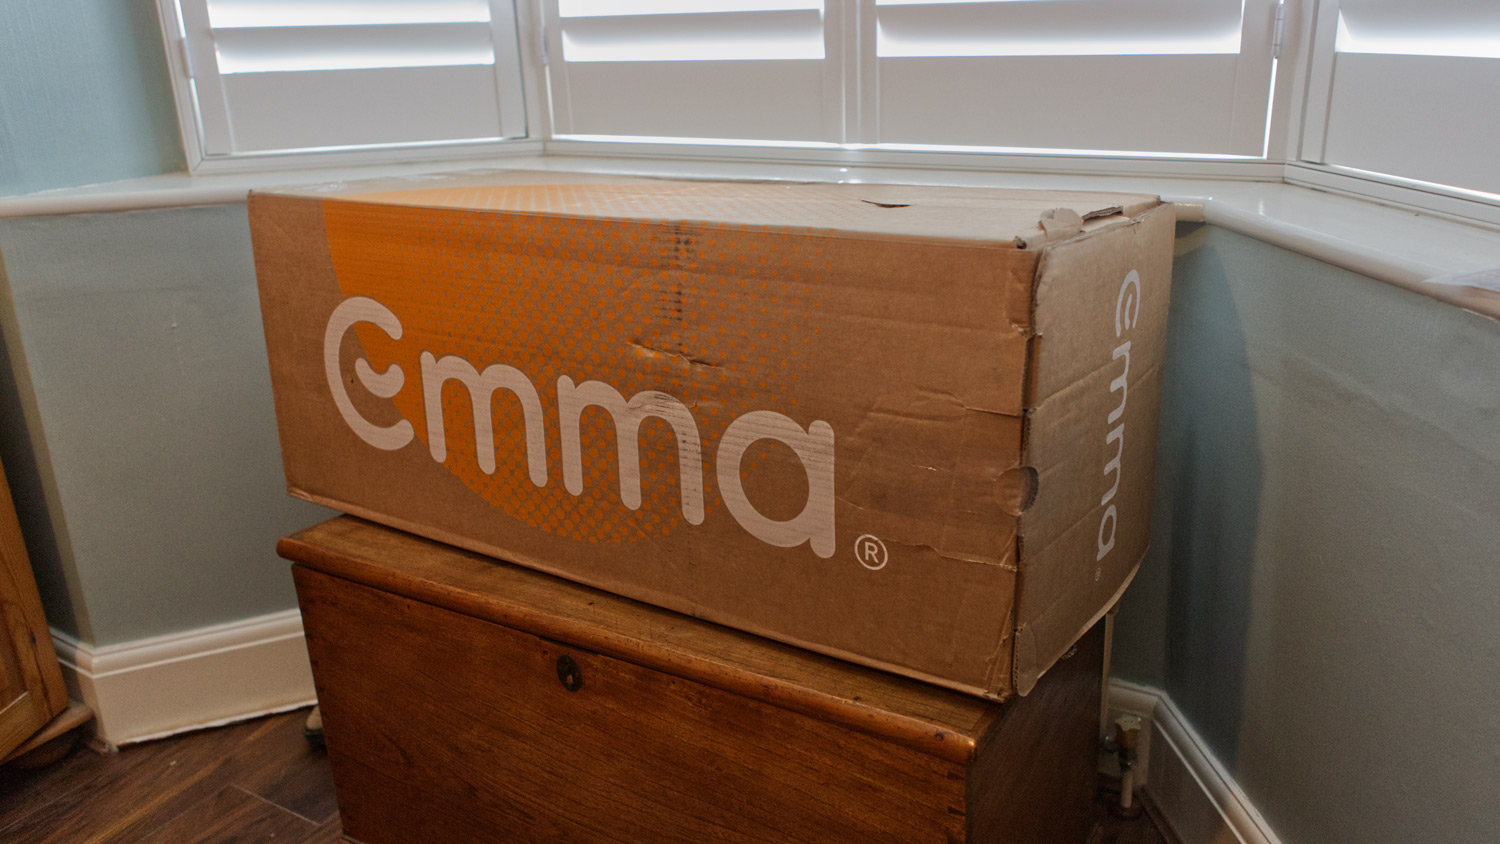 The Emma NextGen Premium in its delivery box